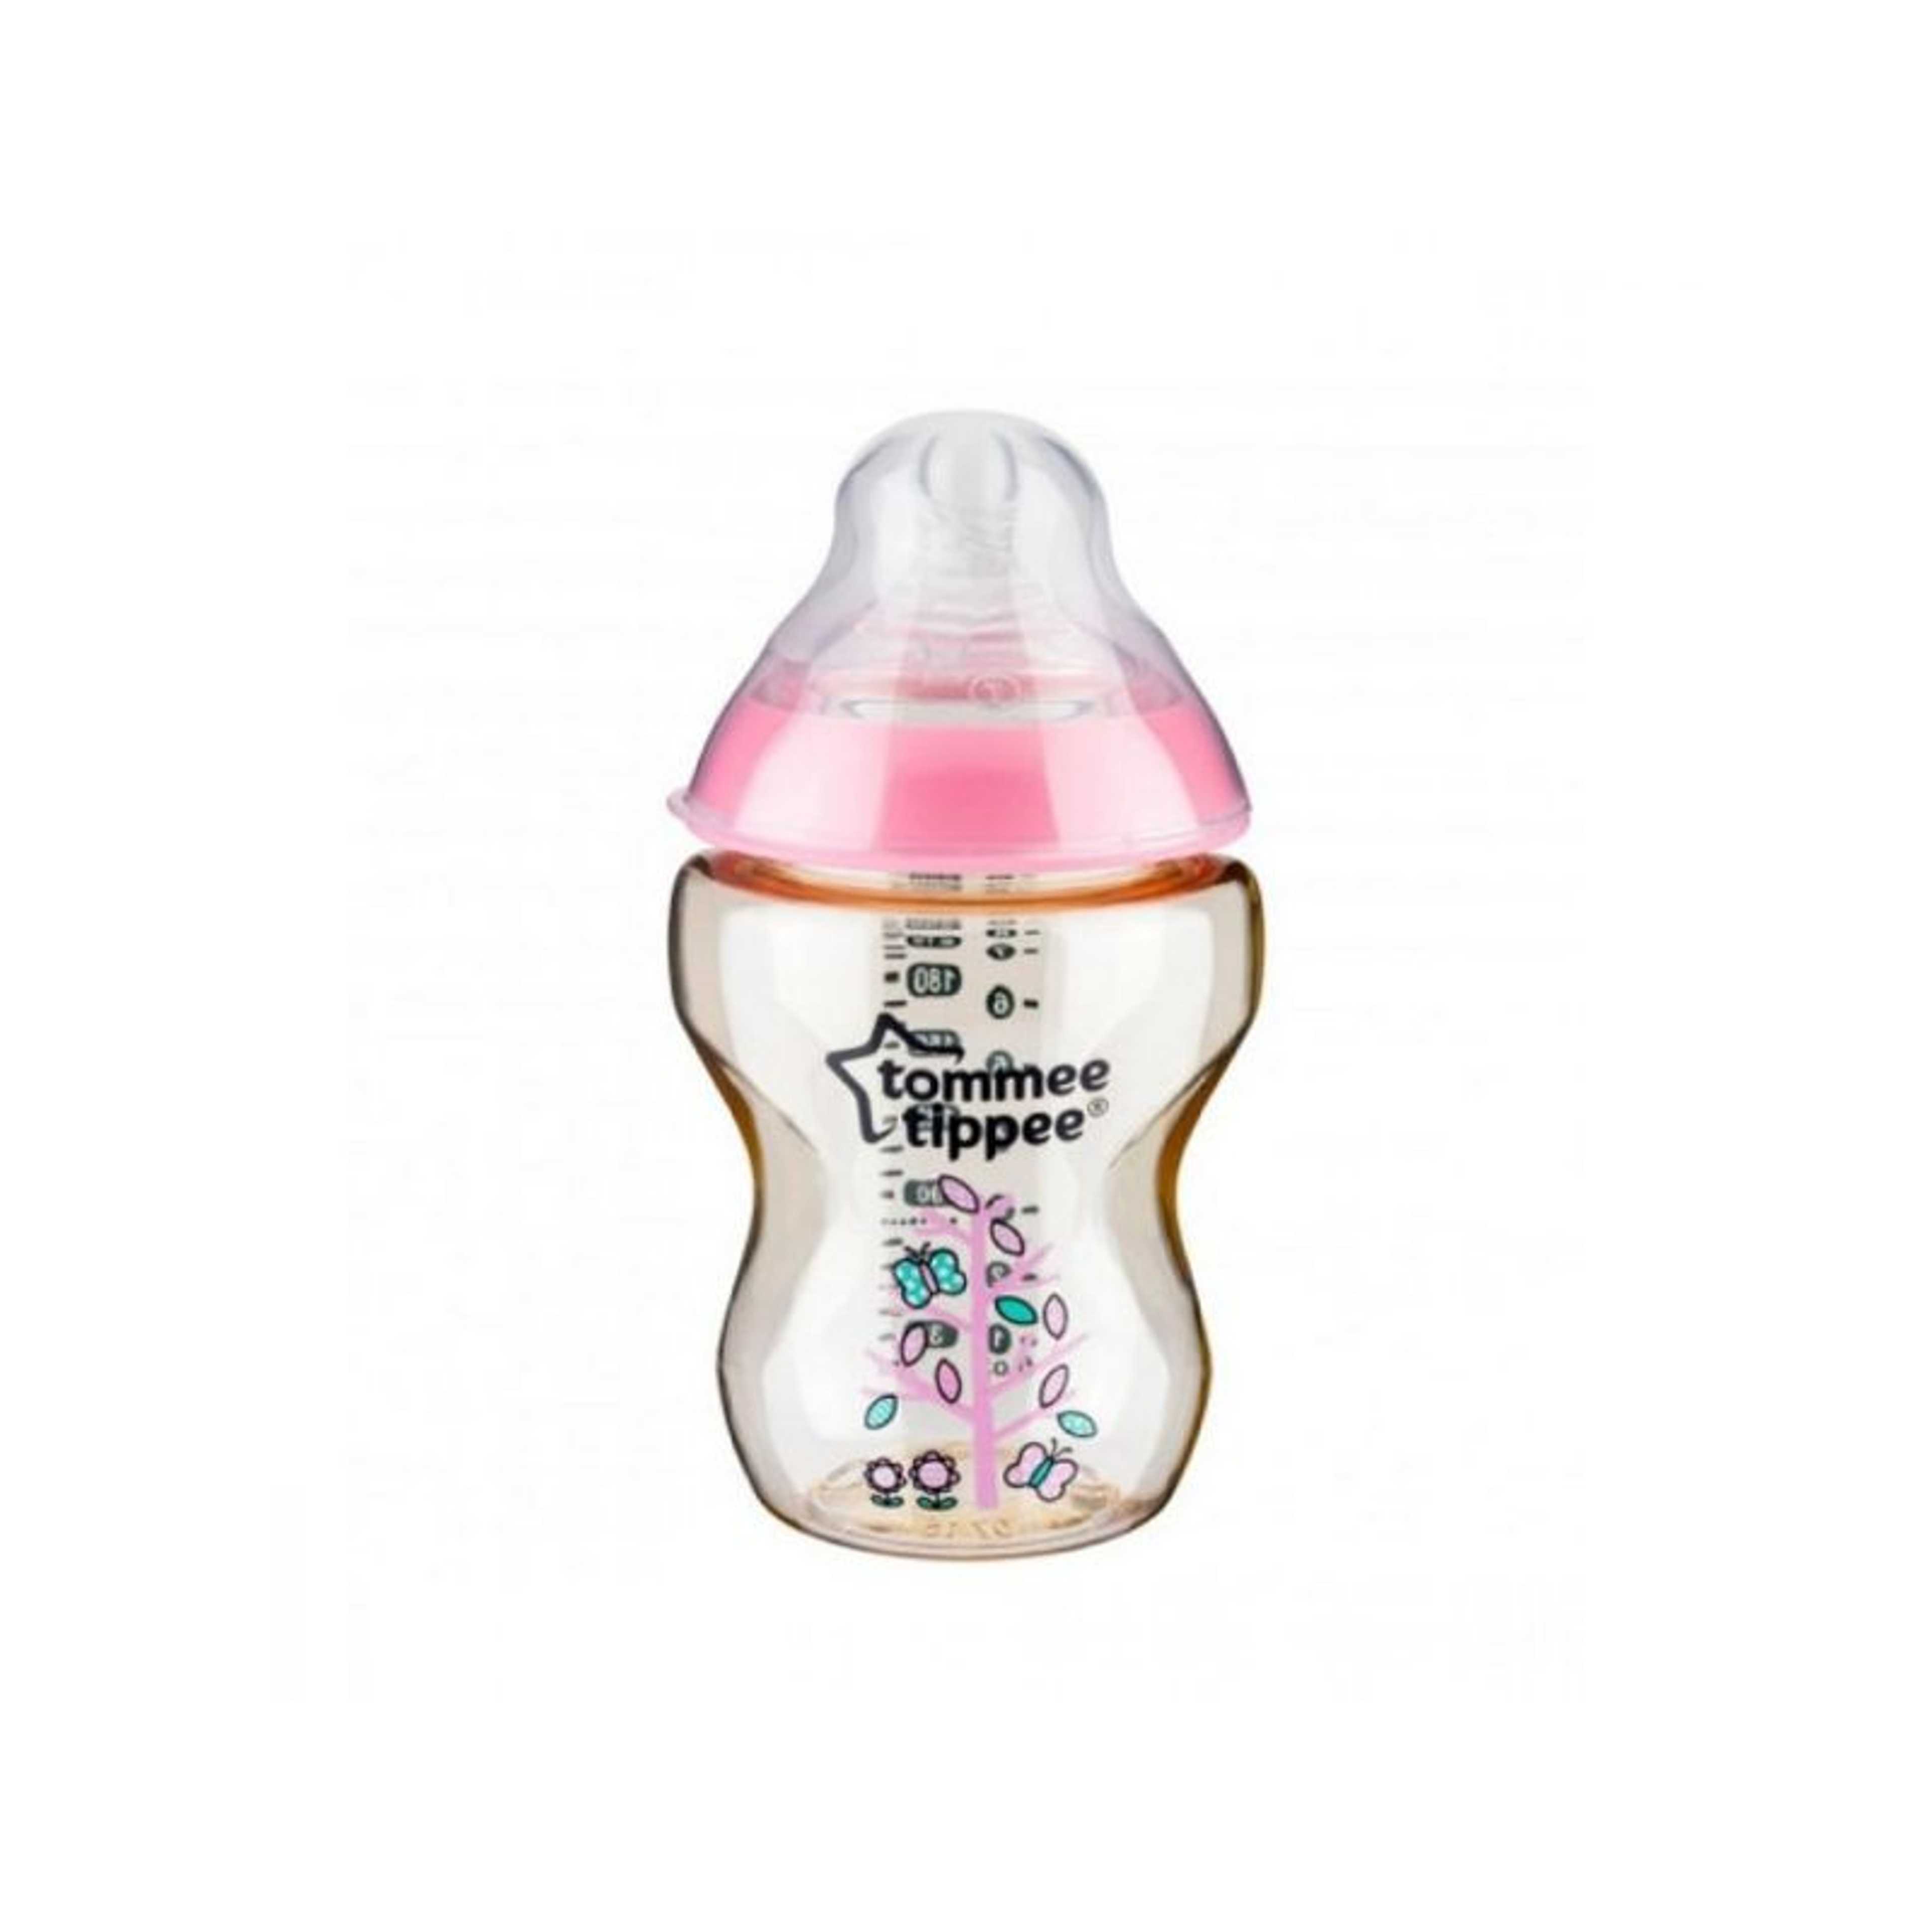 "TT 422743 PESU Bottle For Baby Girl "